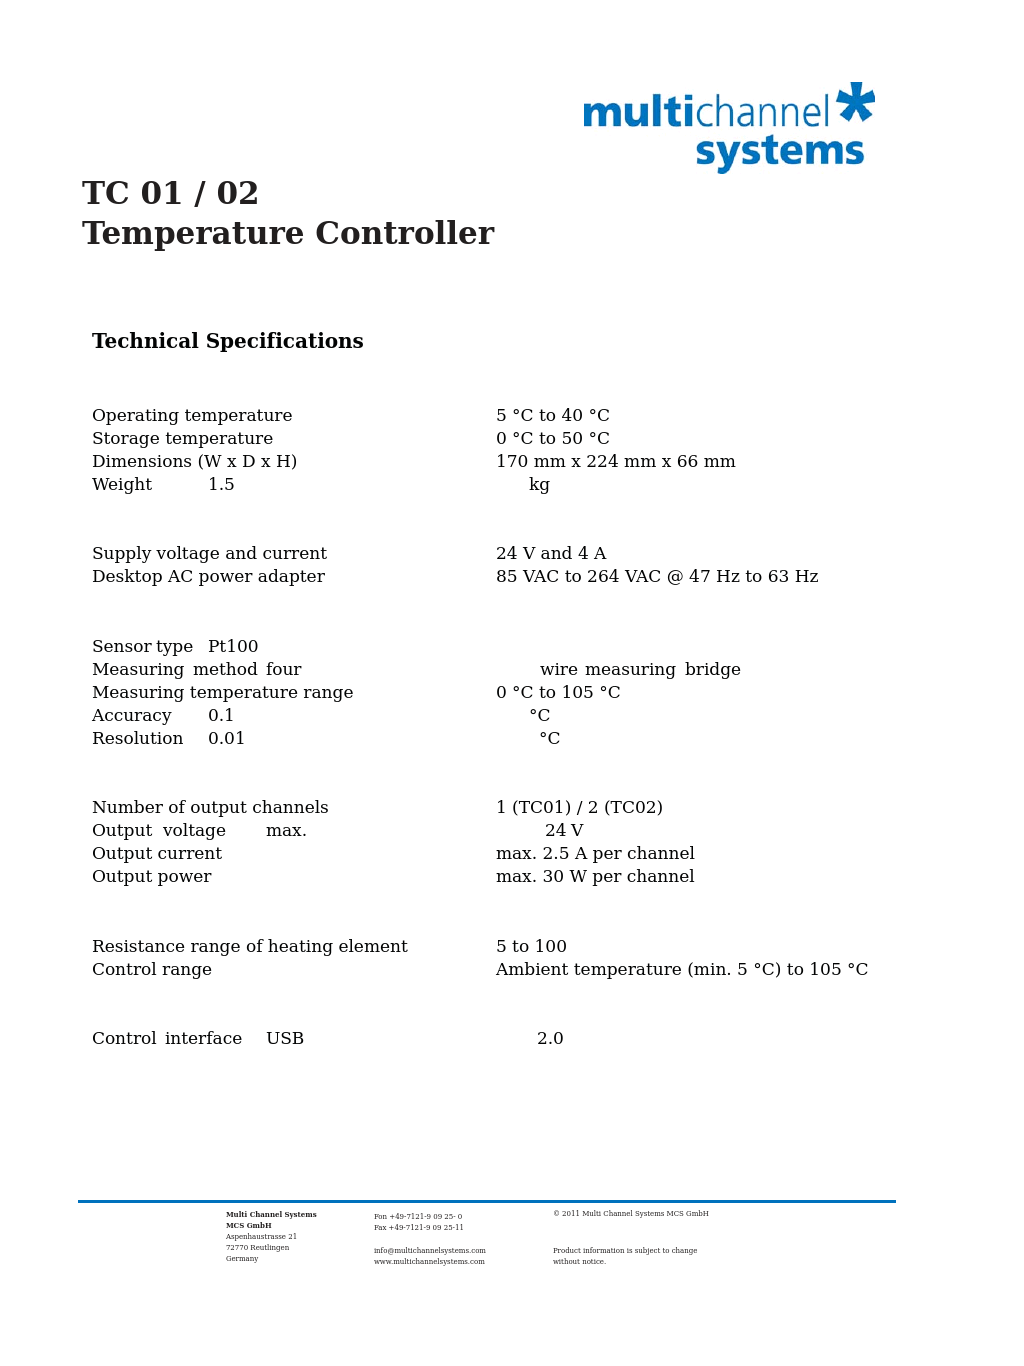 TC 01_02 Temperature Controller